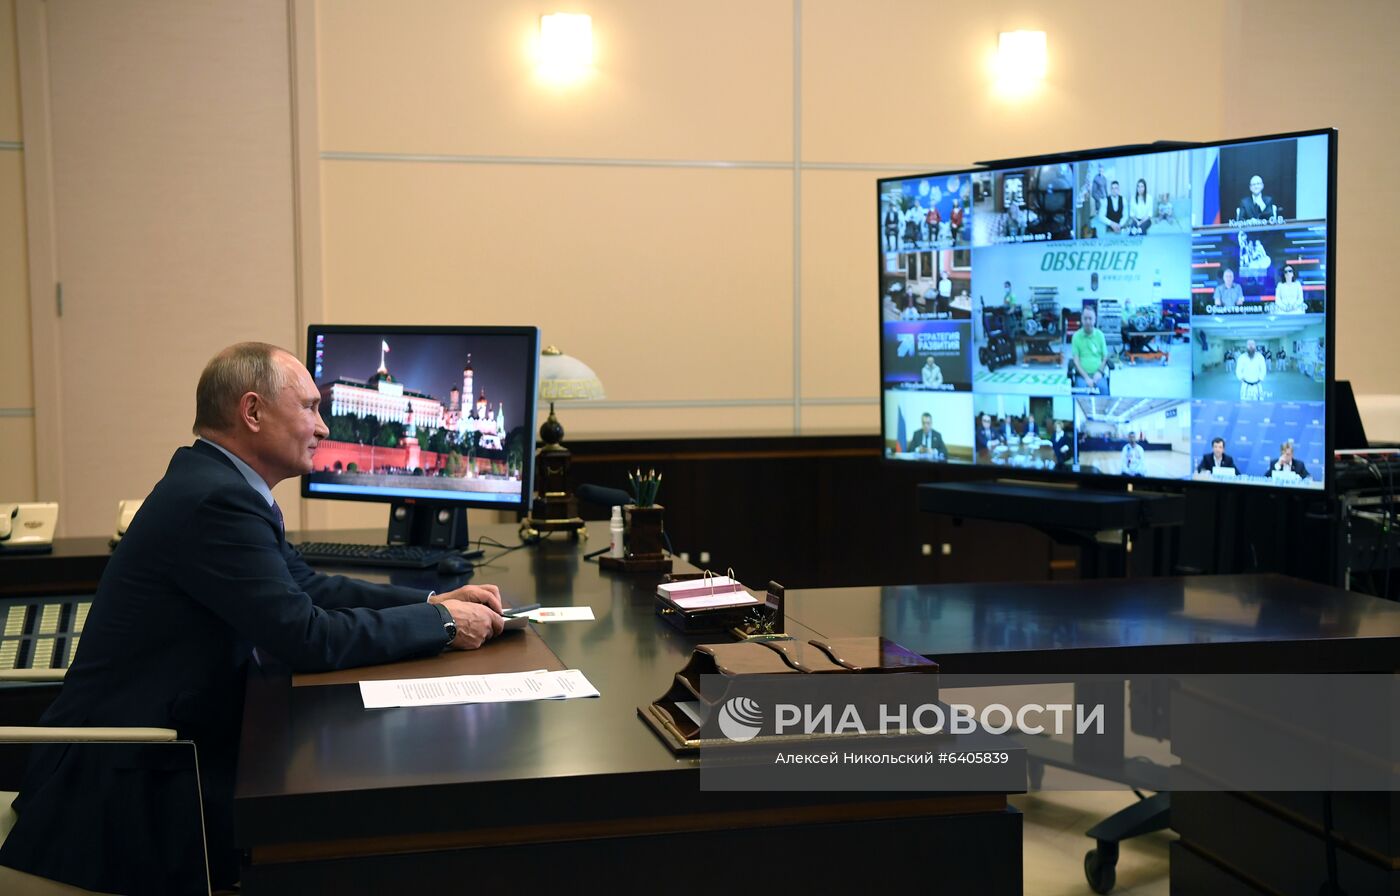 Рабочая встреча президента РФ В. Путина с представителями общественных организаций инвалидов